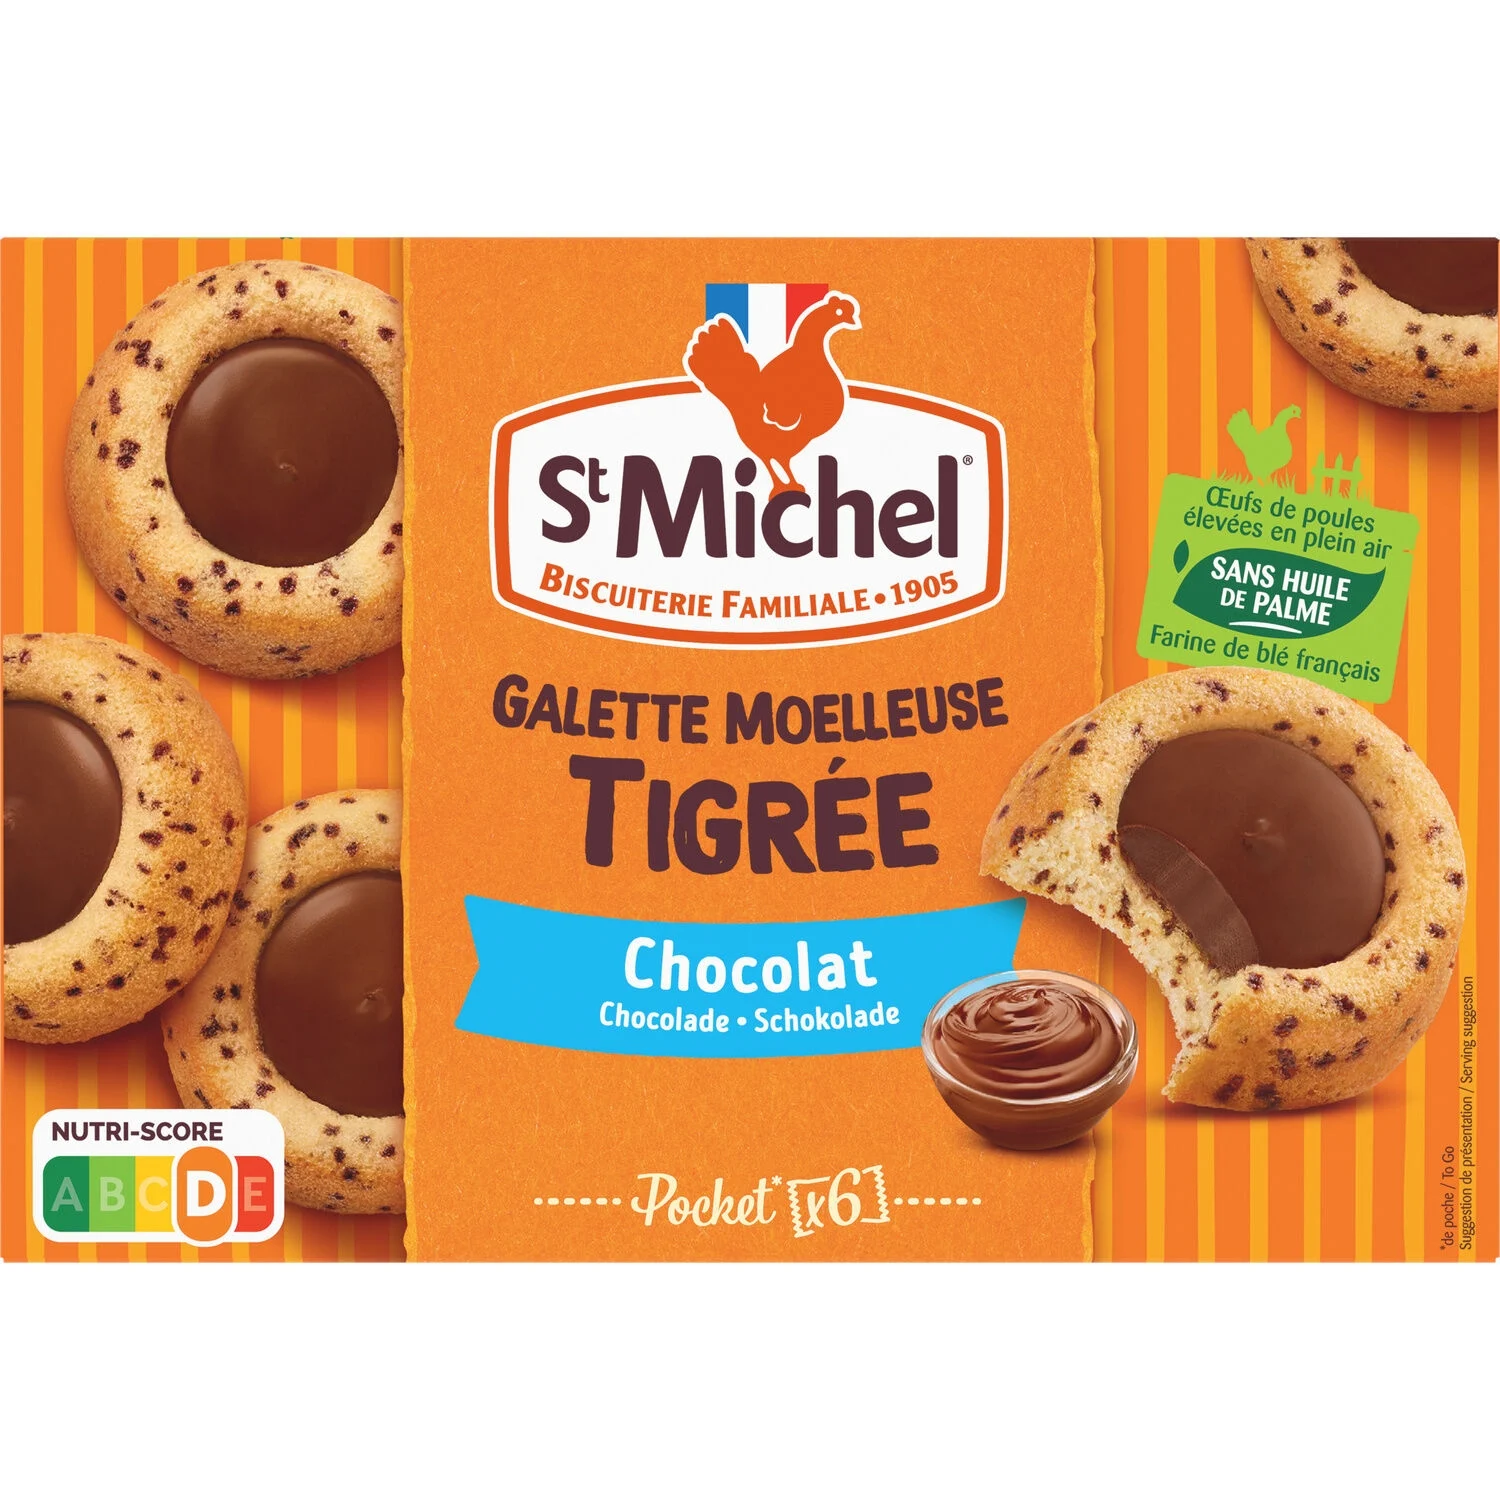 Biscuits galettes moelleuses tigrée Cœur Chocolat 180g - ST MICHEL